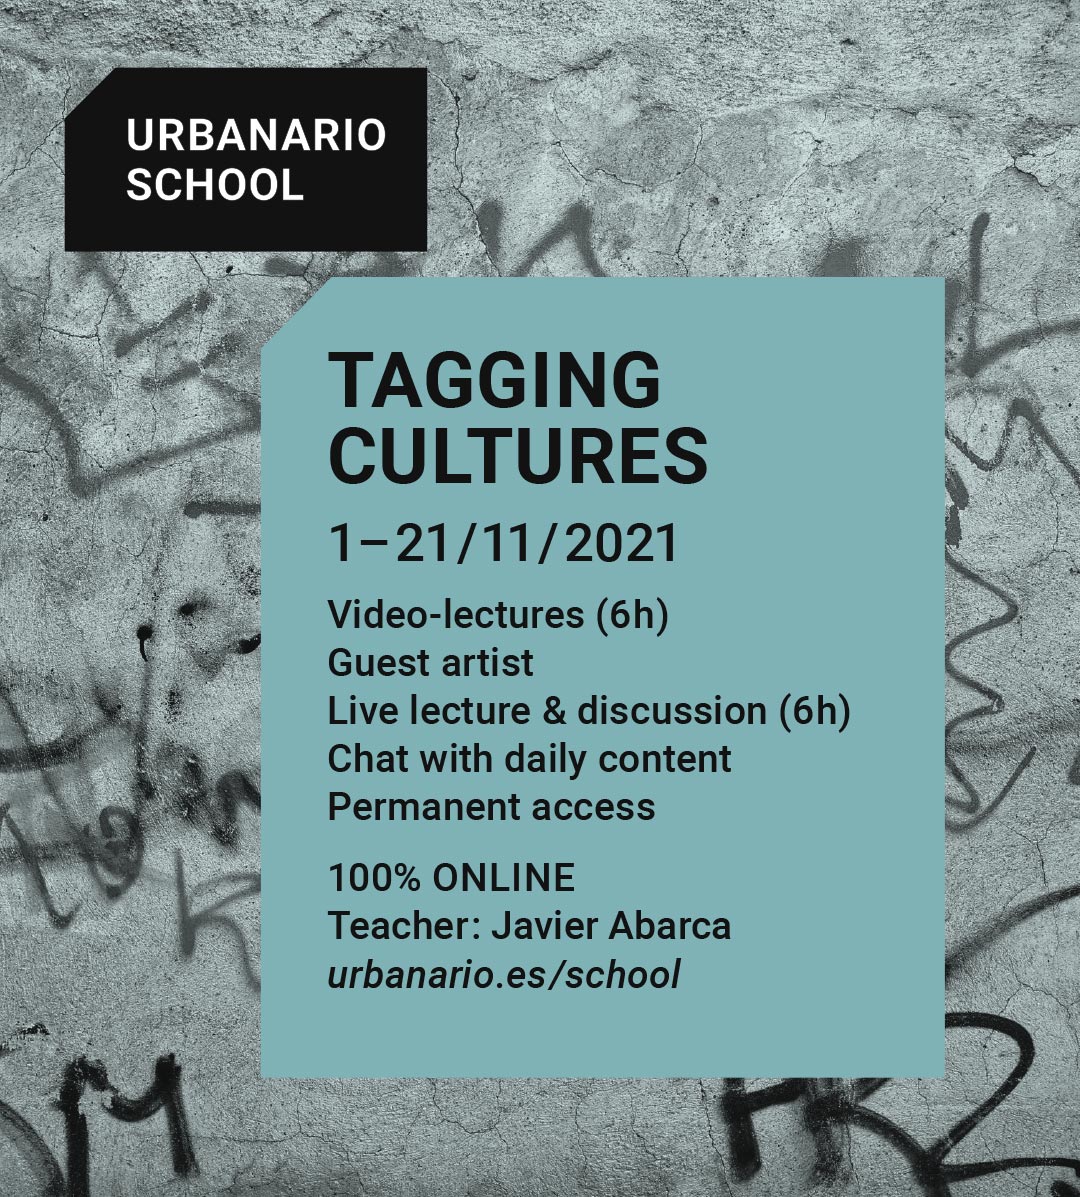 Tagging cultures - Urbanario School